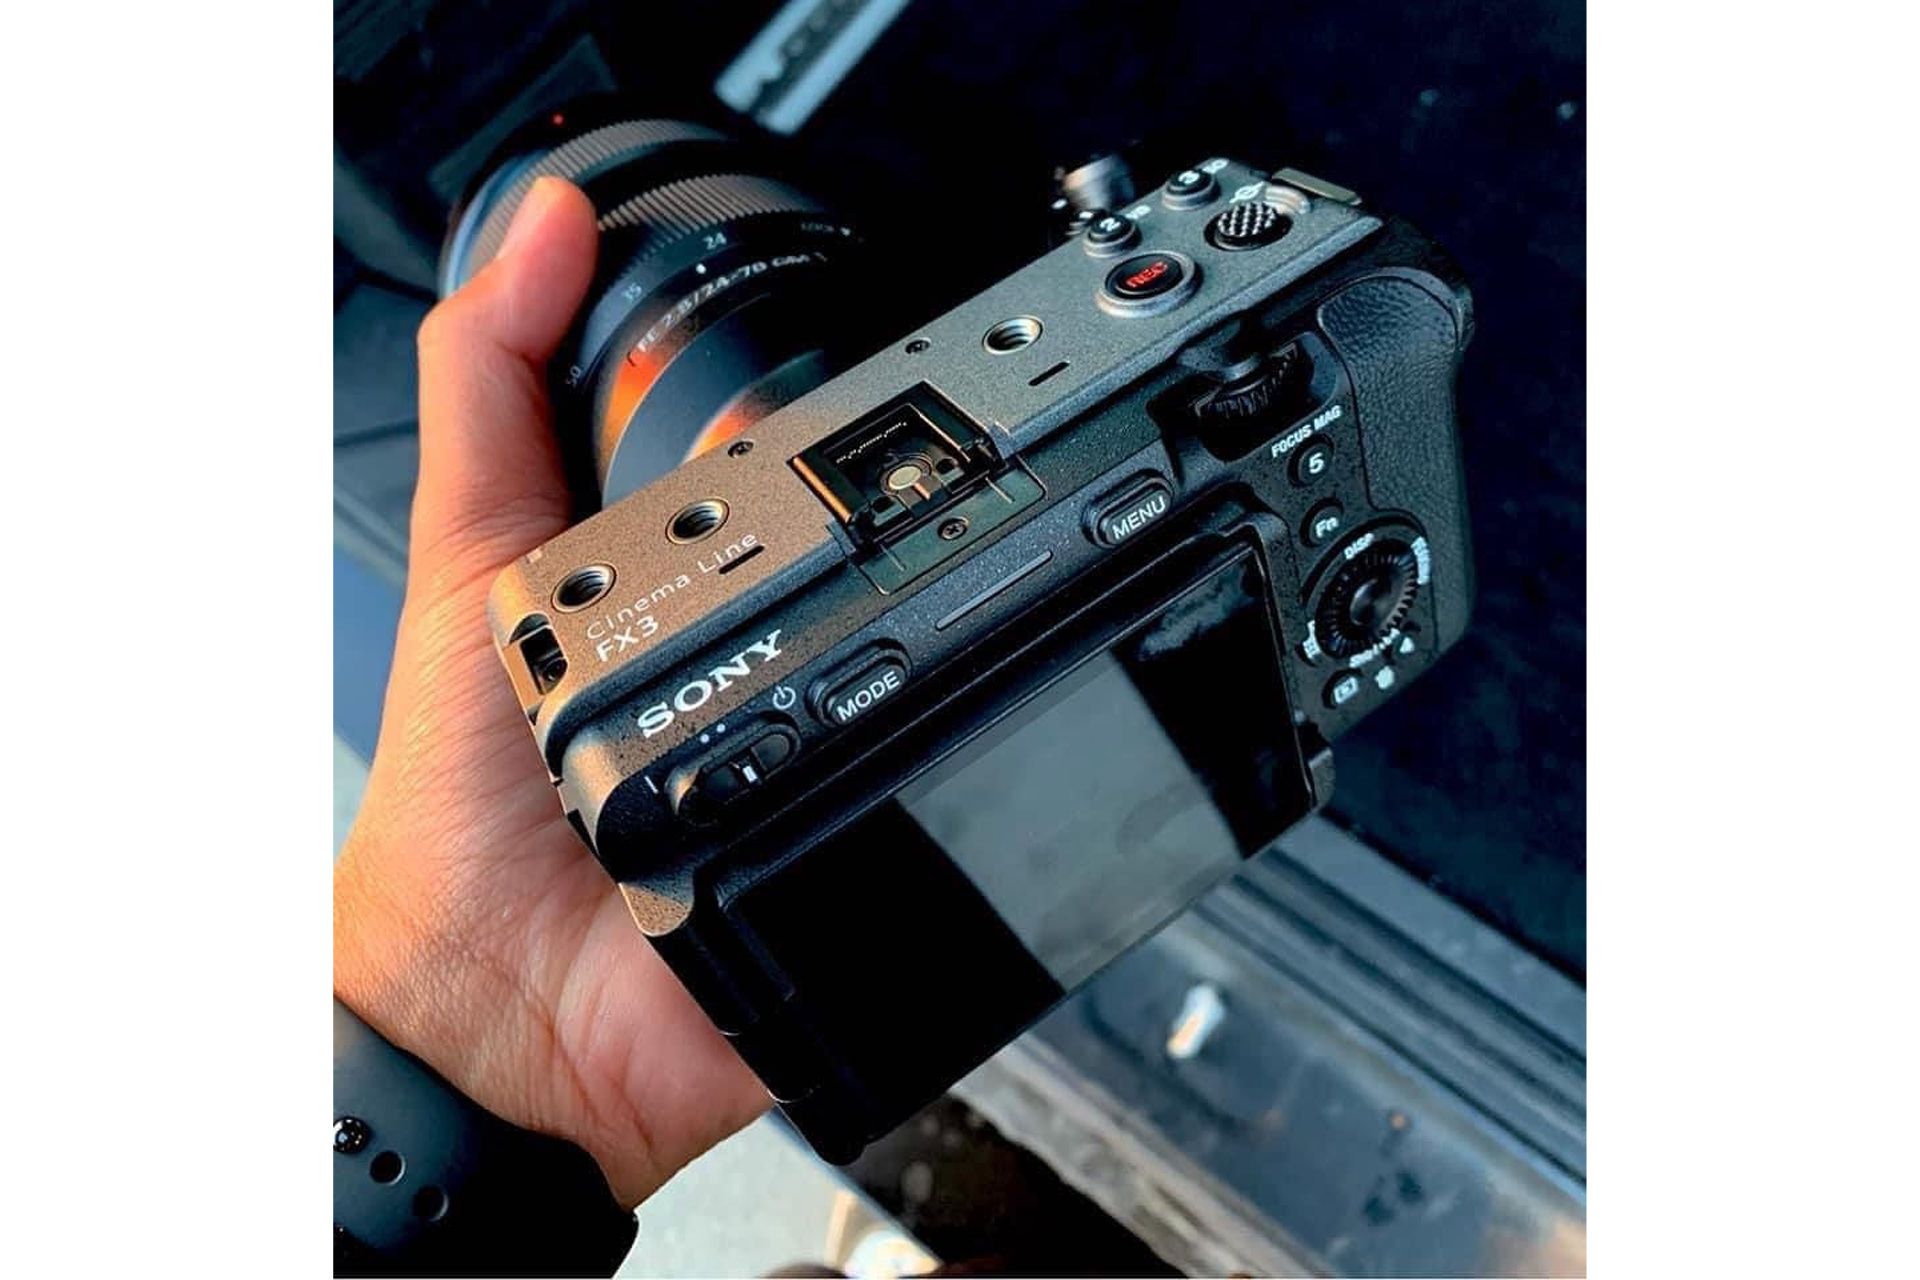 دوربین سونی FX3 در دست در دنیای واقعی تصویر فاش شده